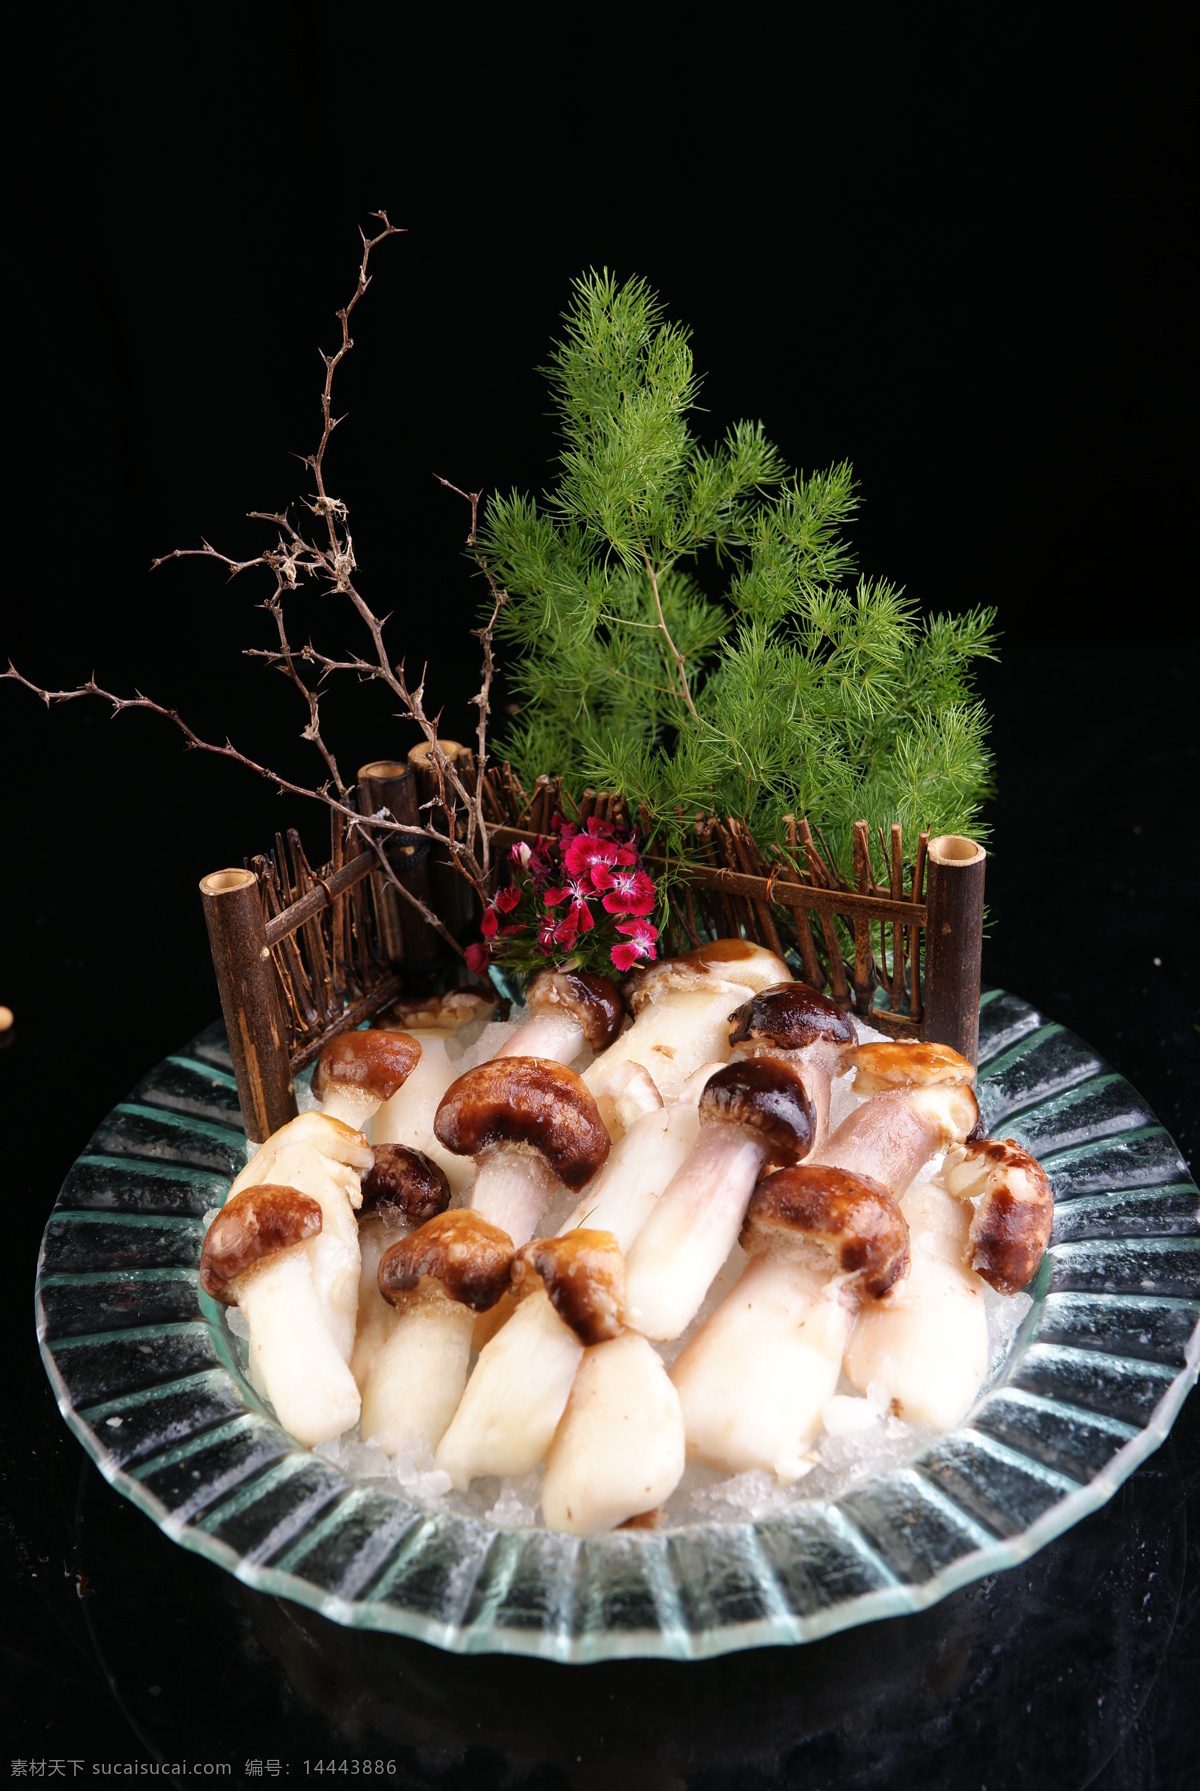 蘑菇 餐饮 餐饮美食 厨房 火锅 酒店 菌类 美食 红蘑 蘑菇类 食物原料 家居装饰素材 室内设计